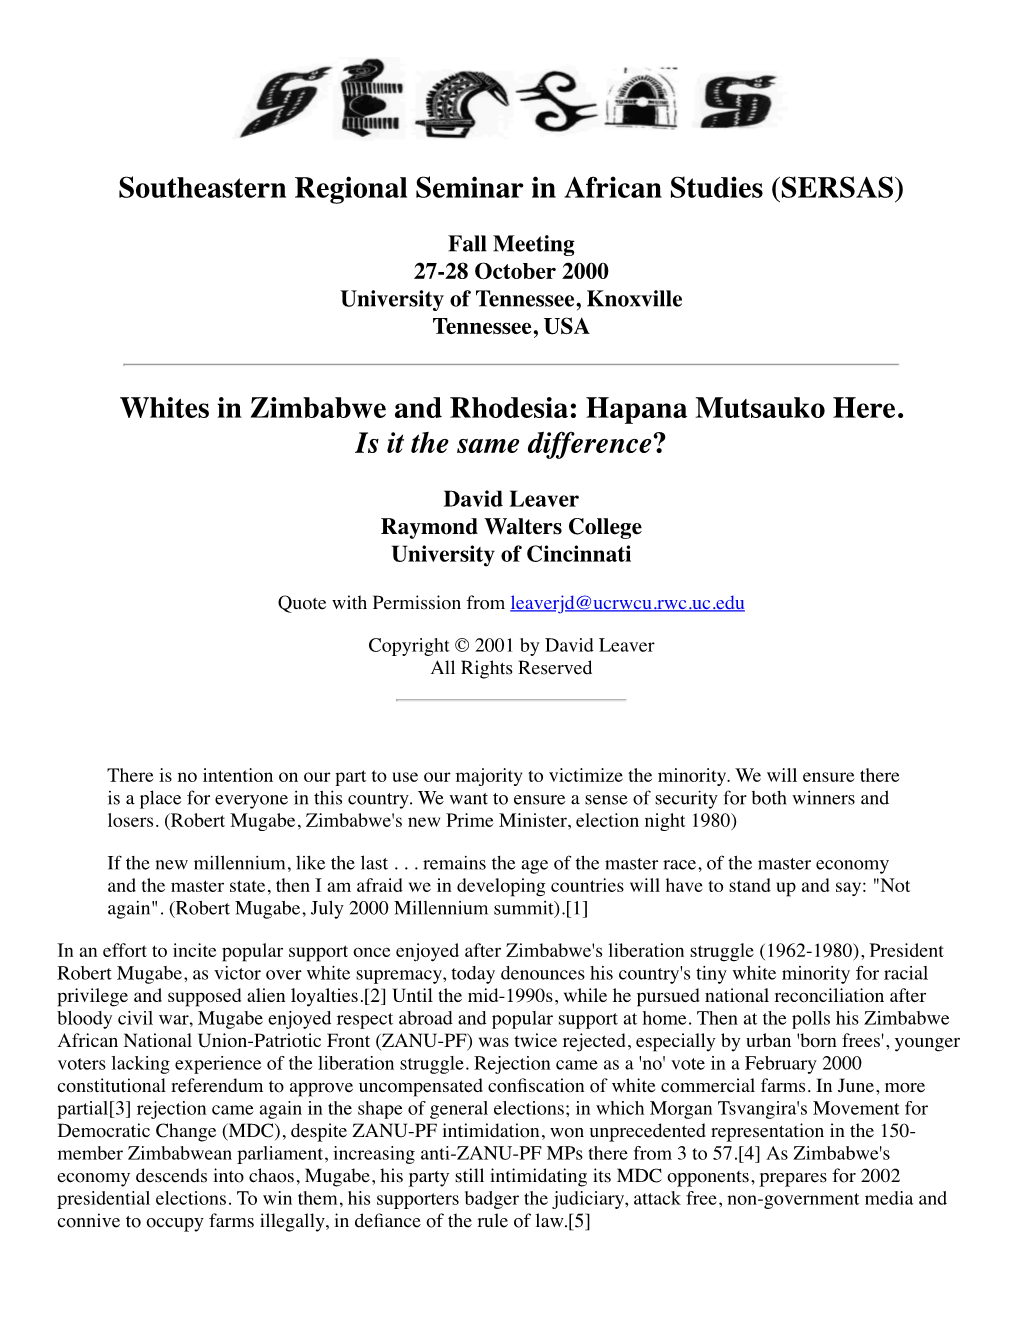 Whites in Zimbabwe and Rhodesia: Hapana Mutsauko Here